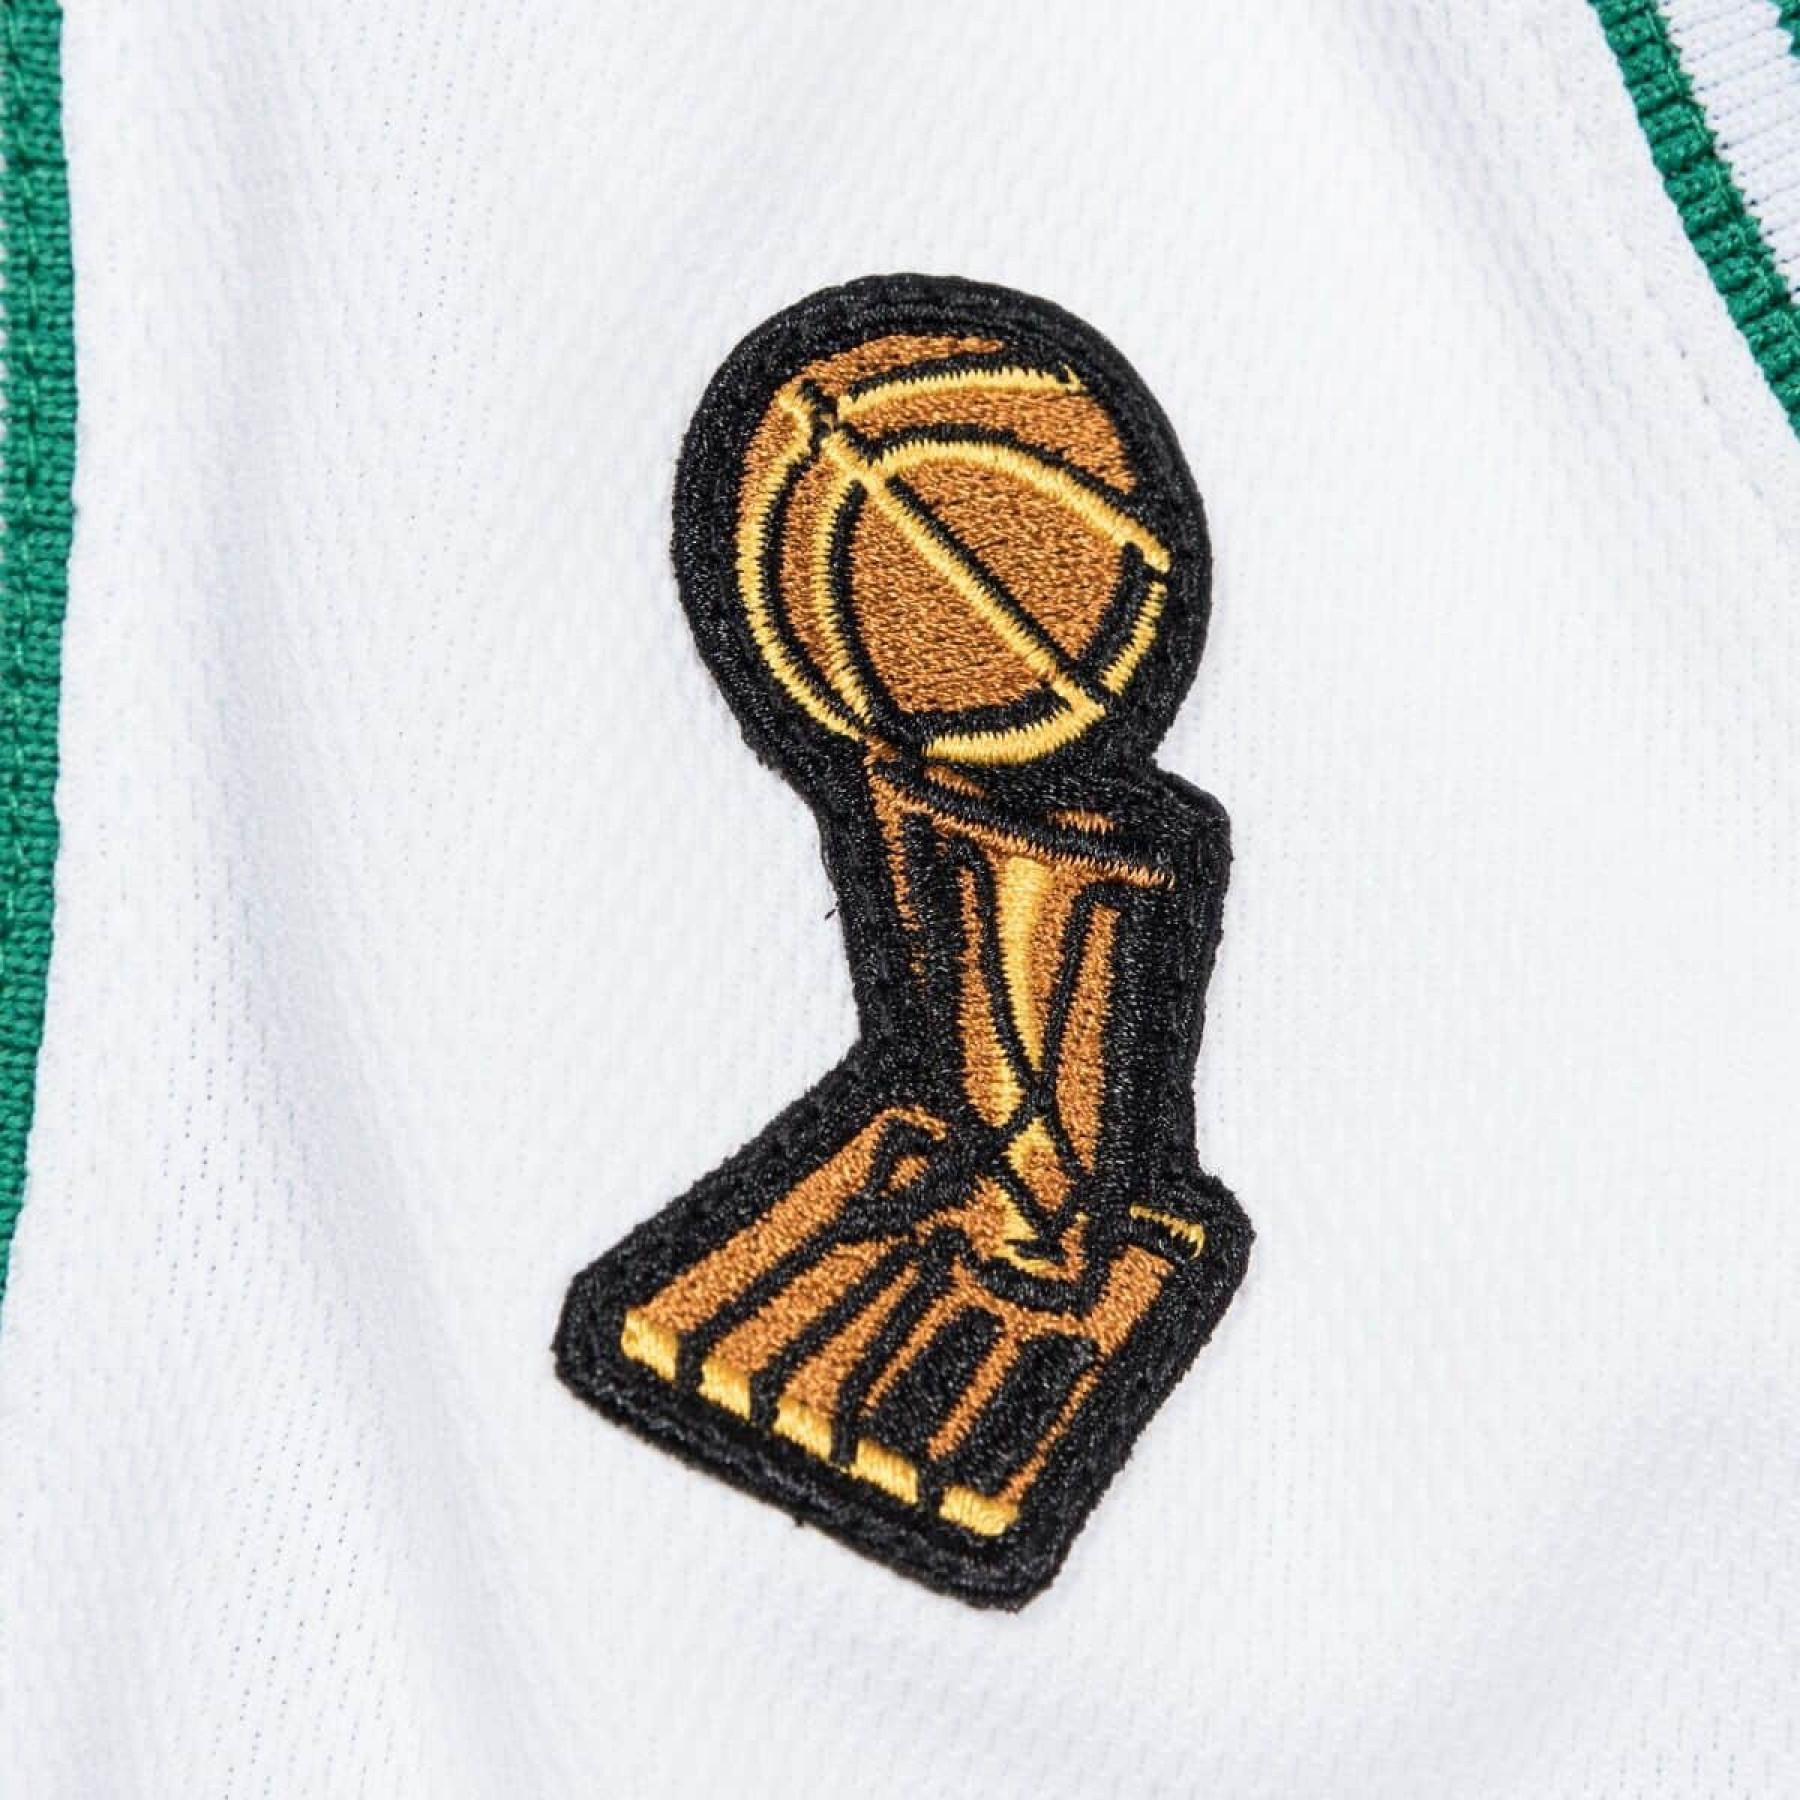 Auténtico jersey Boston Celtics nba